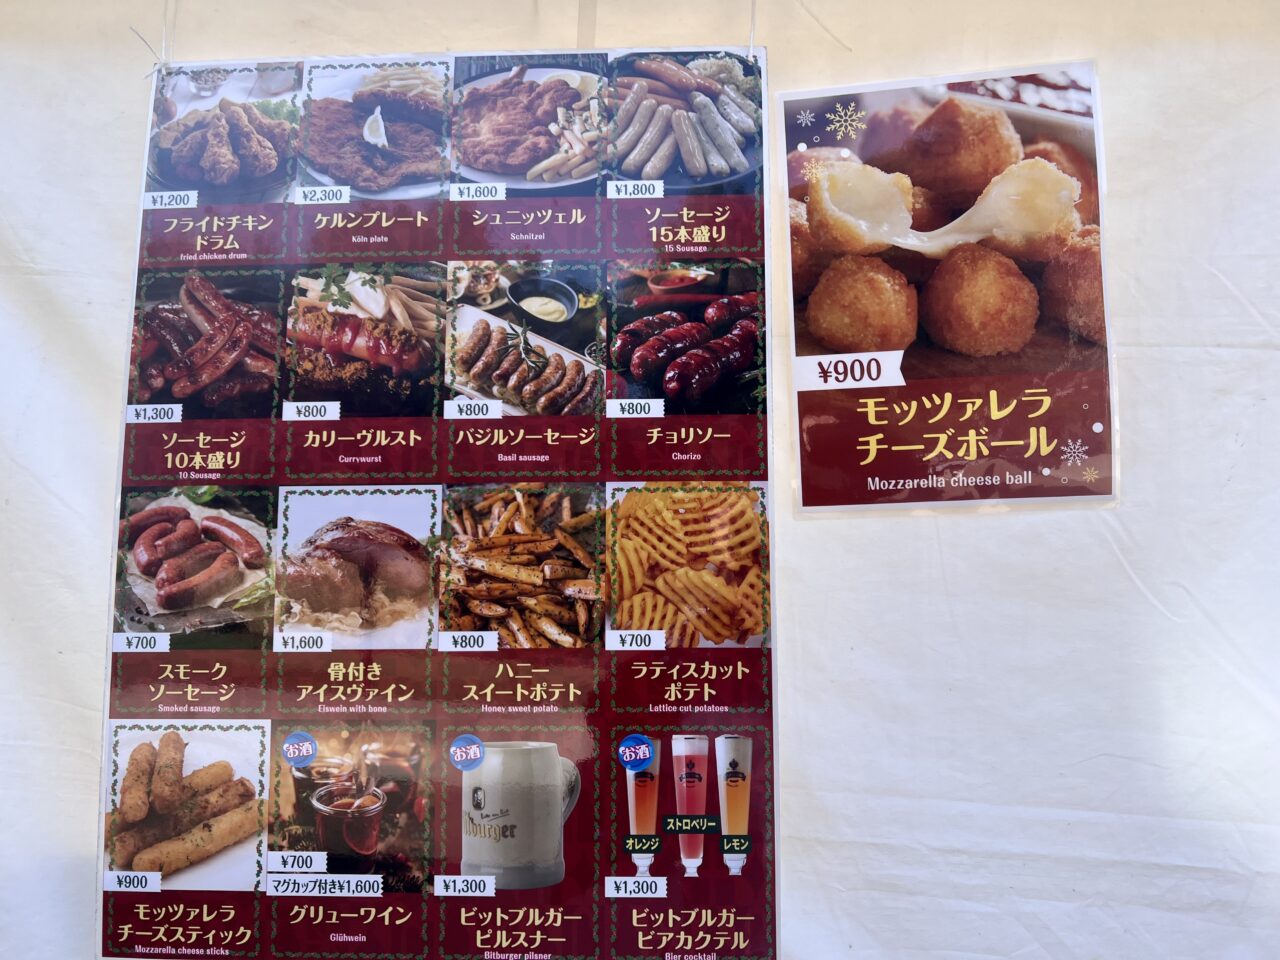 天王寺公園(てんしば)で開催されている「大阪クリスマスマーケットの飲食店のグルメメニューです。ケルンハウス